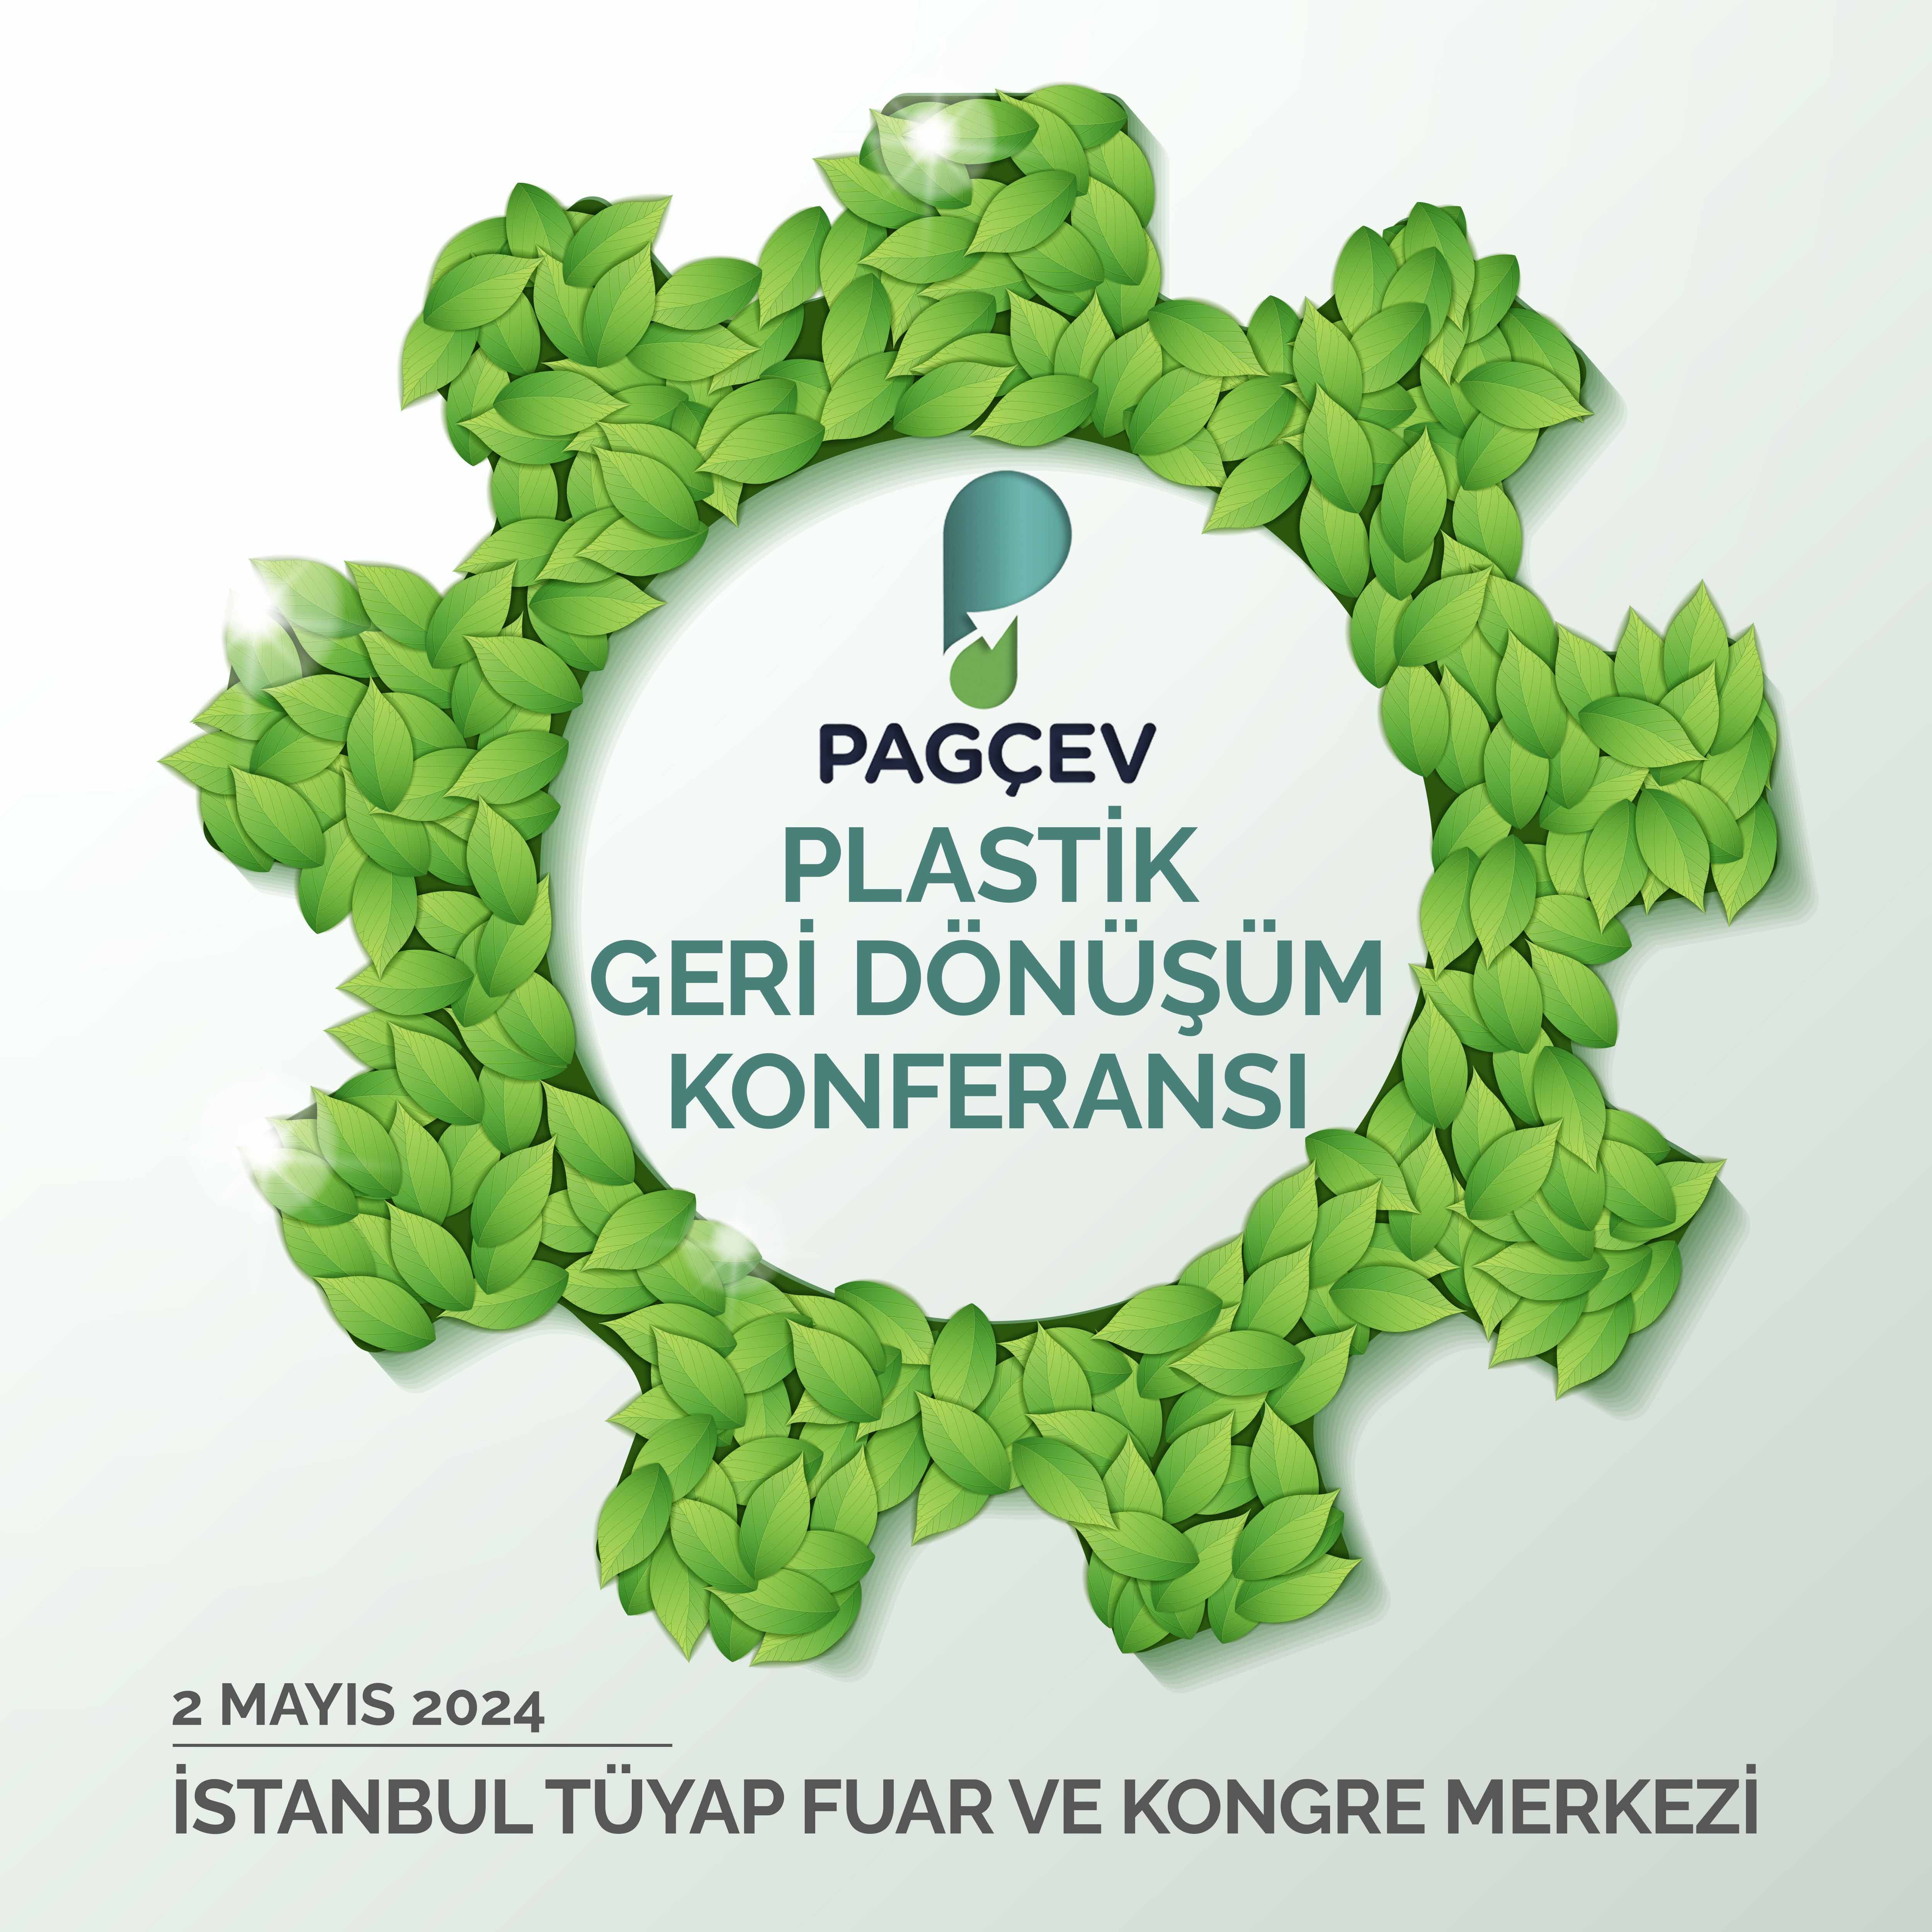 PAGÇEV Plastik Geri Dönüşüm Konferansı 2 Mayıs Perşembe Günü Gerçekleşecek